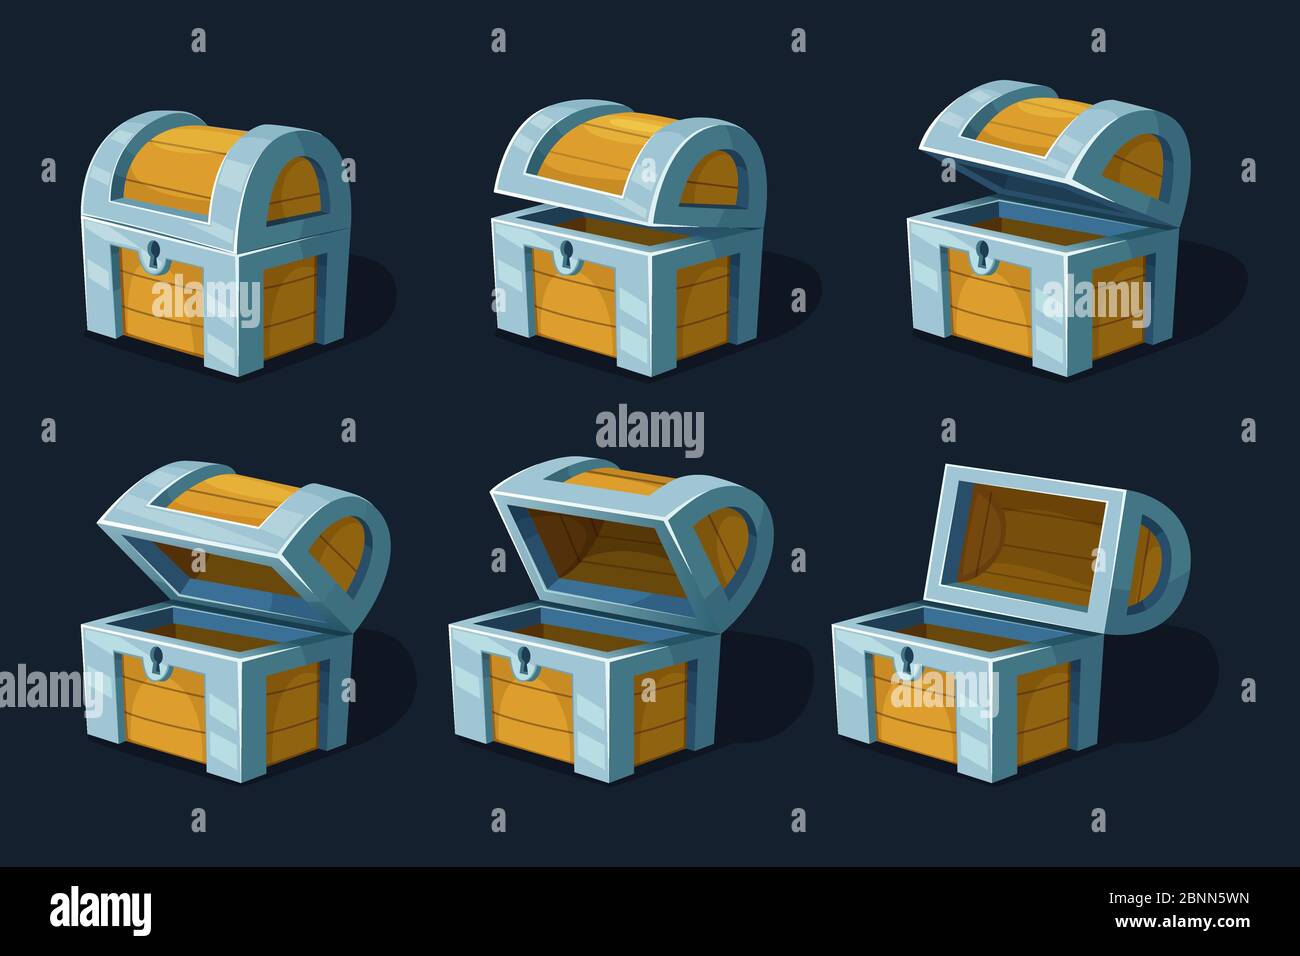 Animation de plusieurs images clés de coffre en bois ou de boîte. Images de dessins animés vectoriels Illustration de Vecteur